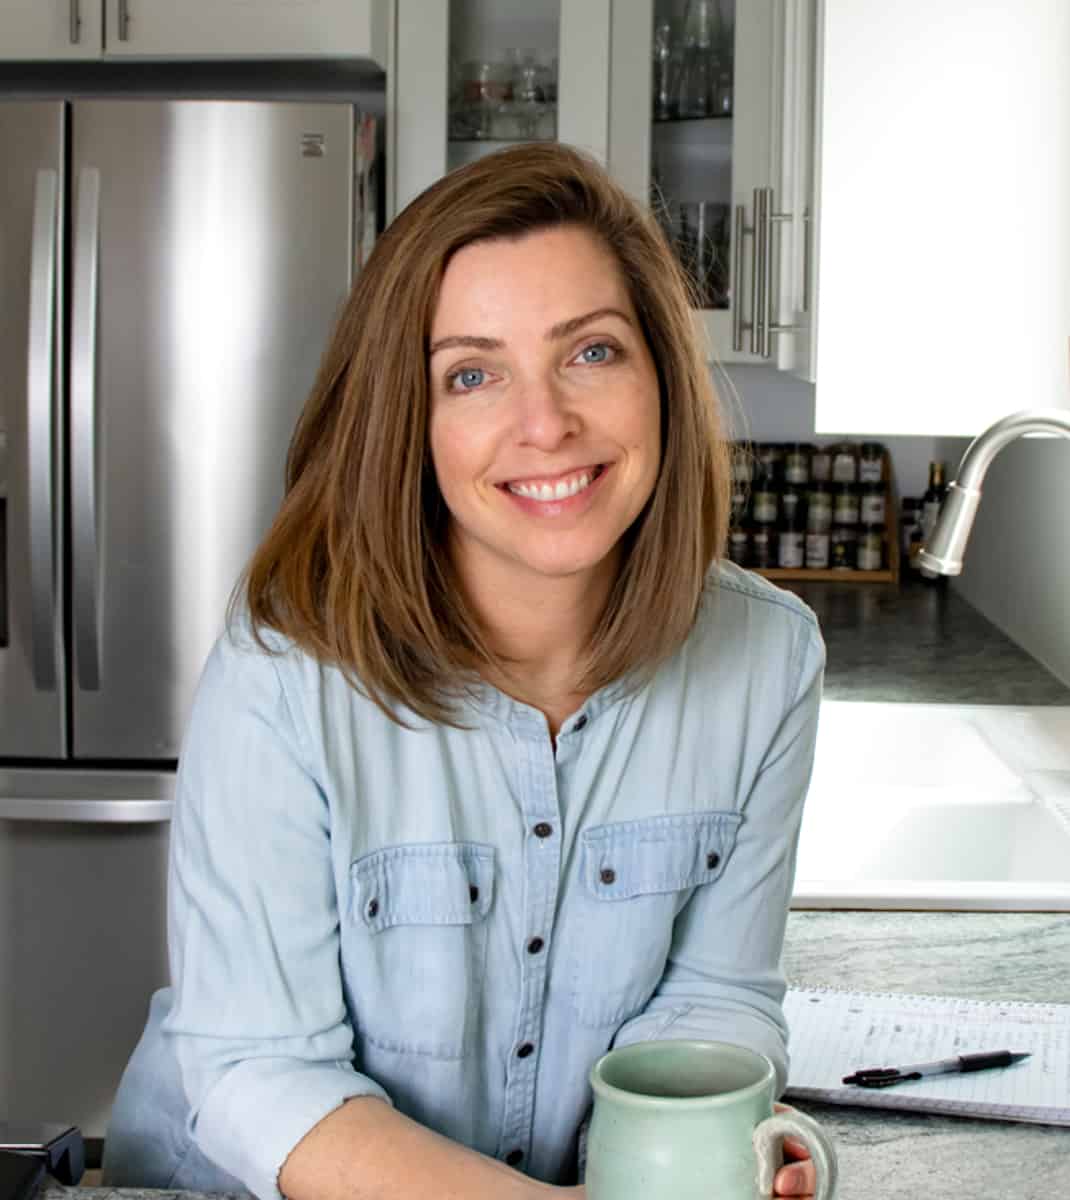 author Lori Rasmussen in her kitchen